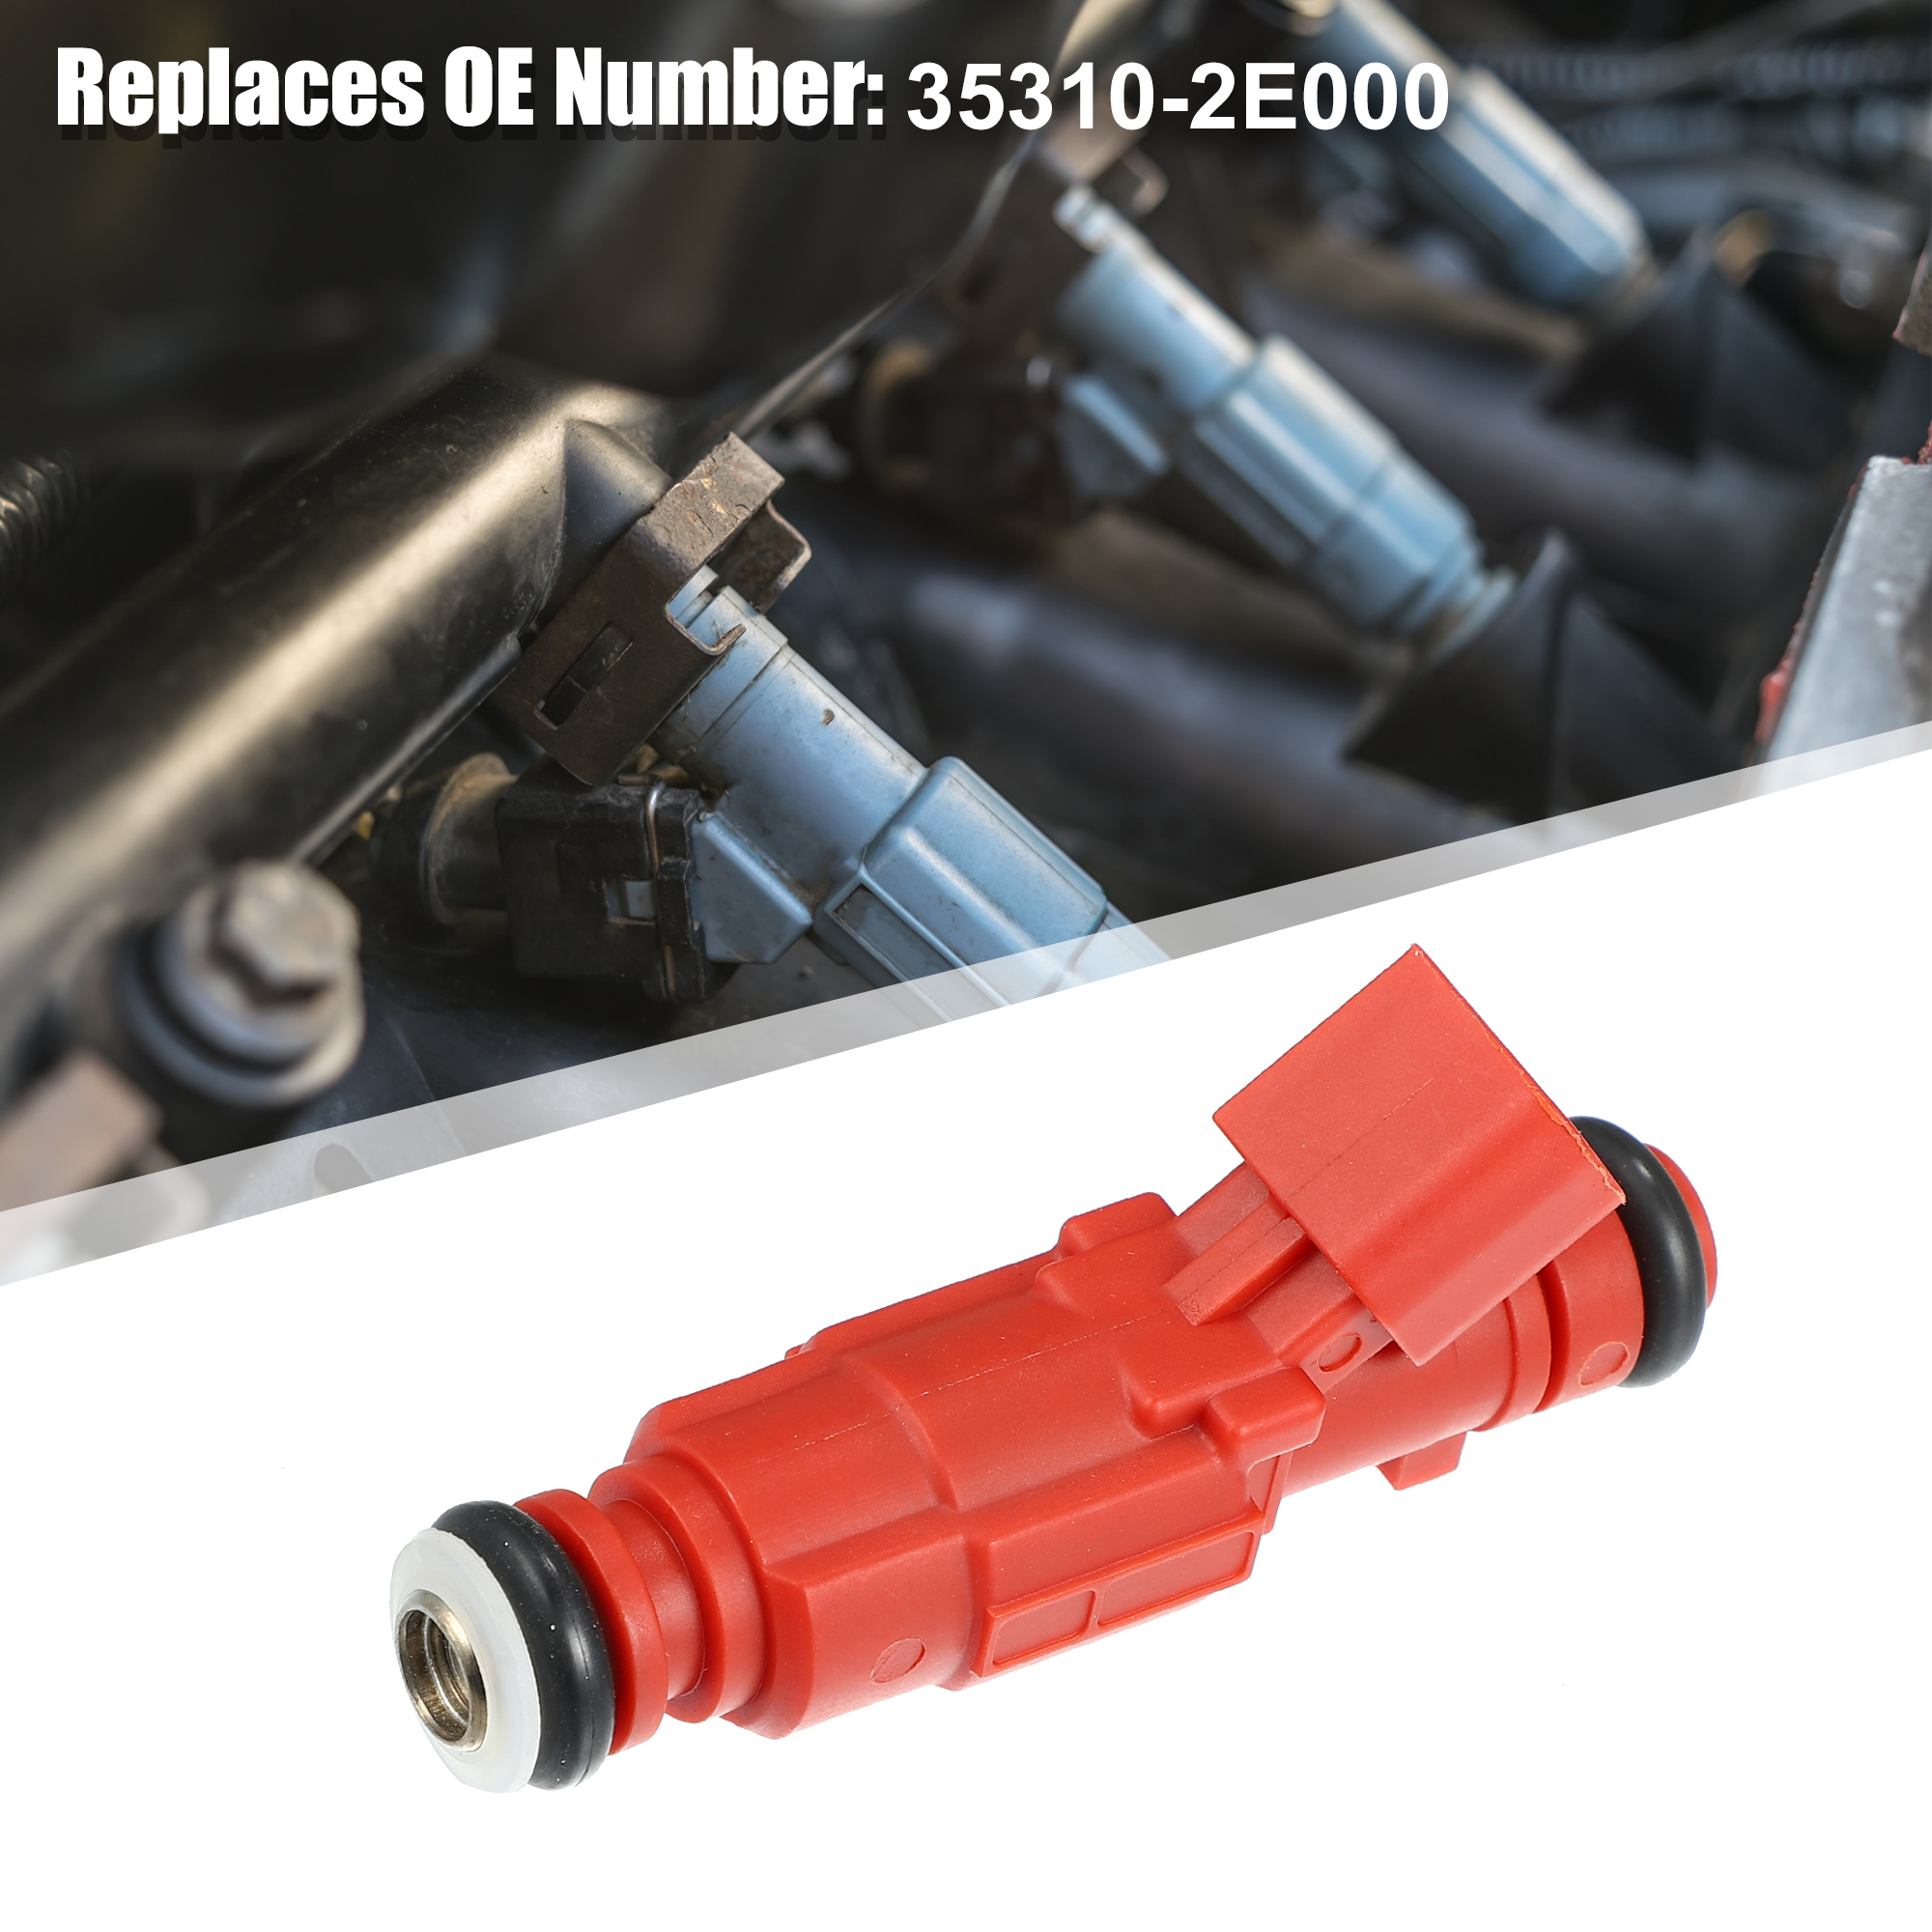 Unique Bargains 1pcs 35310-2E000 Car Petrol Fuel Injector Nozzle for Hyundai Elantra 11-13